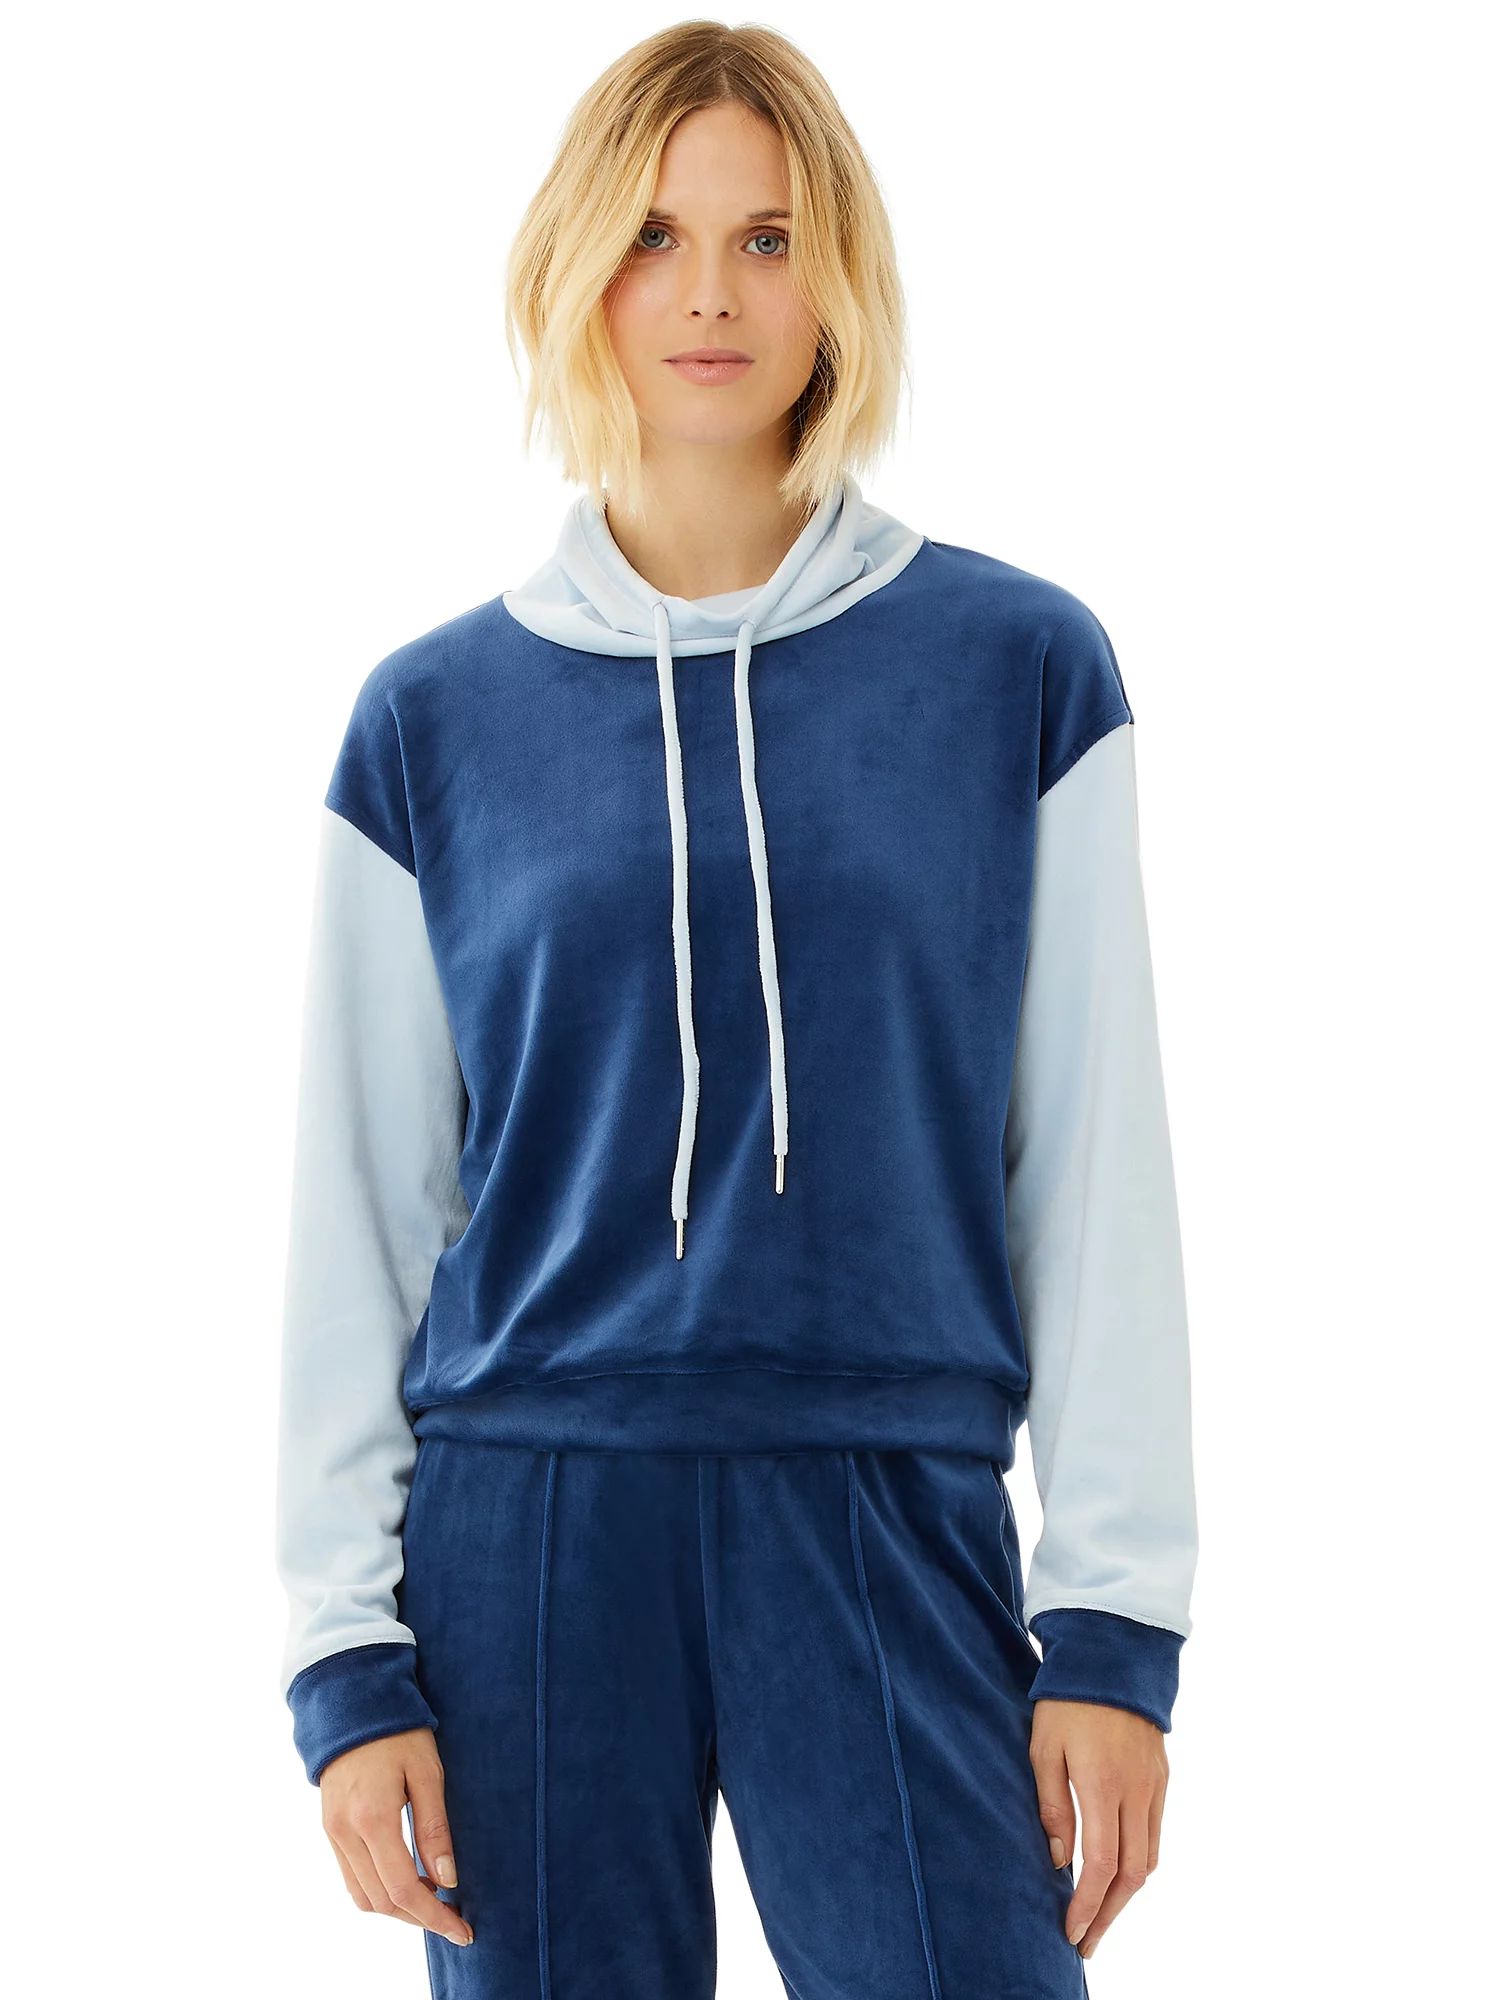 Scoop Women’s Two-Tone Sweatshirt with Funnel Neck | Walmart (US)